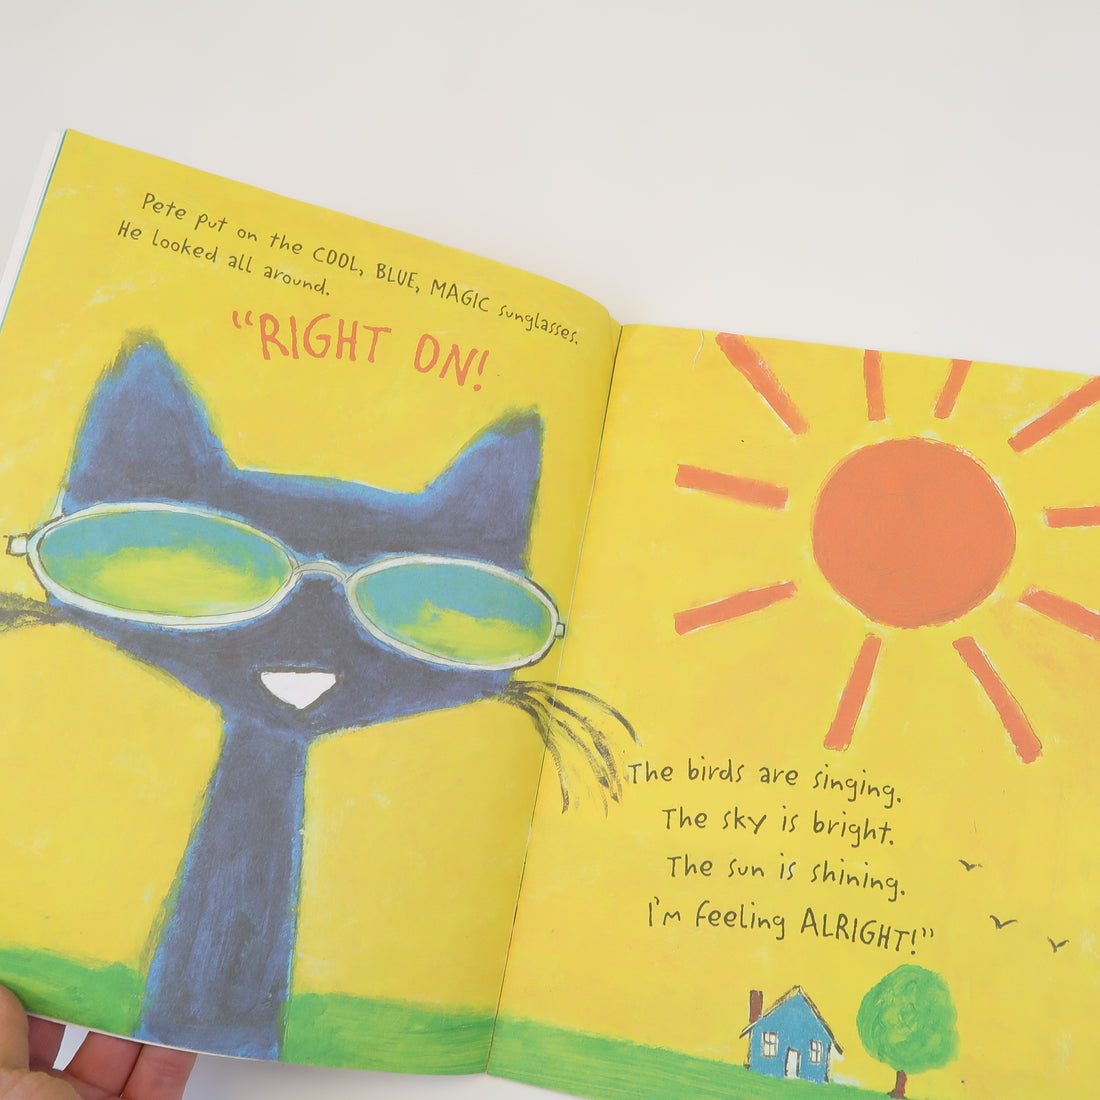 Pete the Cat &amp; His Magic Sunglasses - Paperback